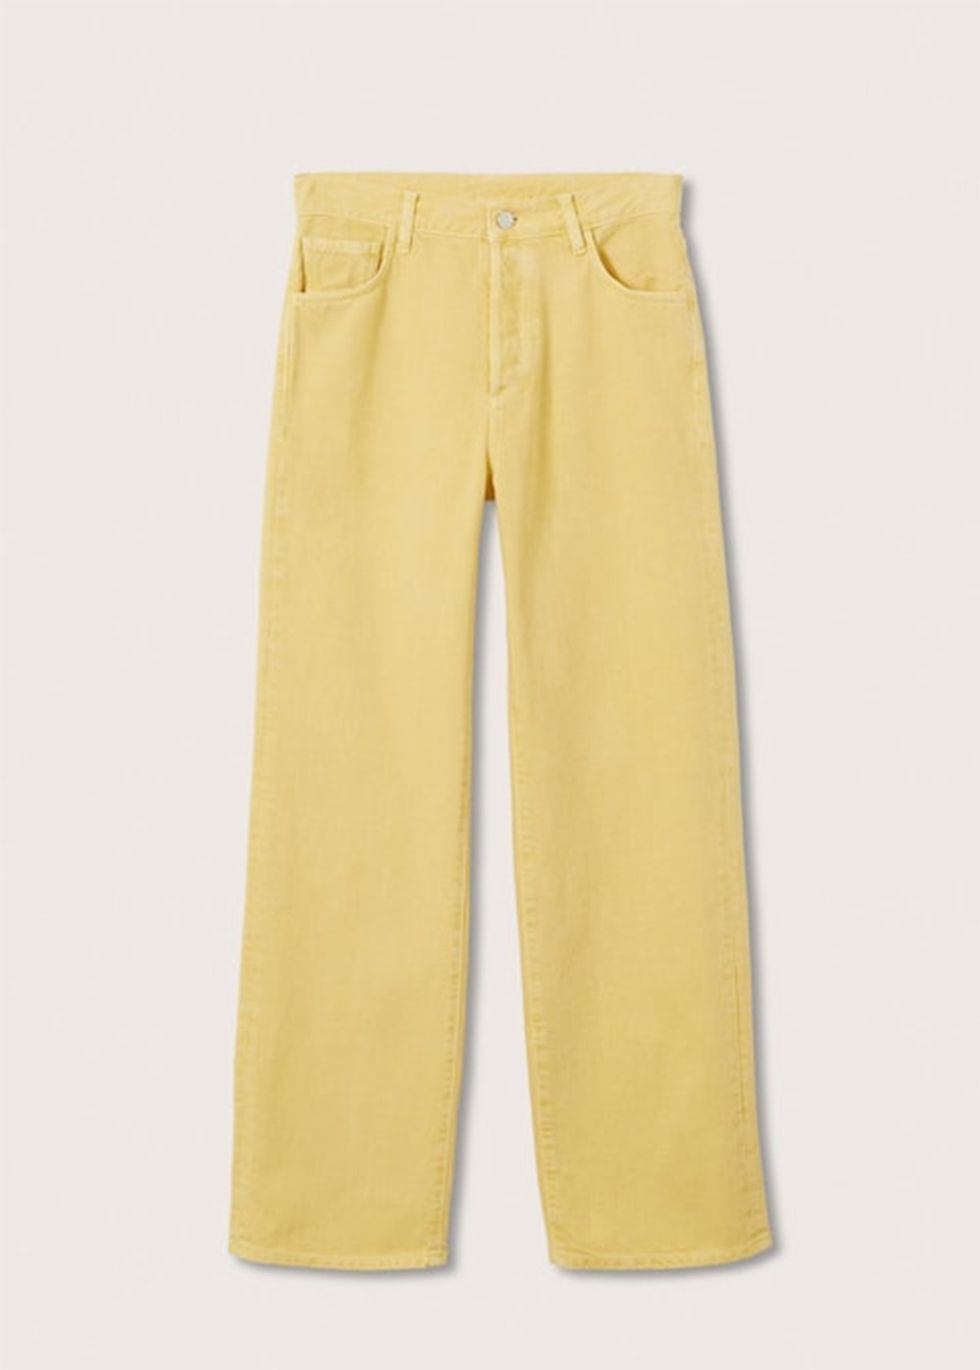 pantalón vaquero amarillo, de mango, como el que tiene maría pombo